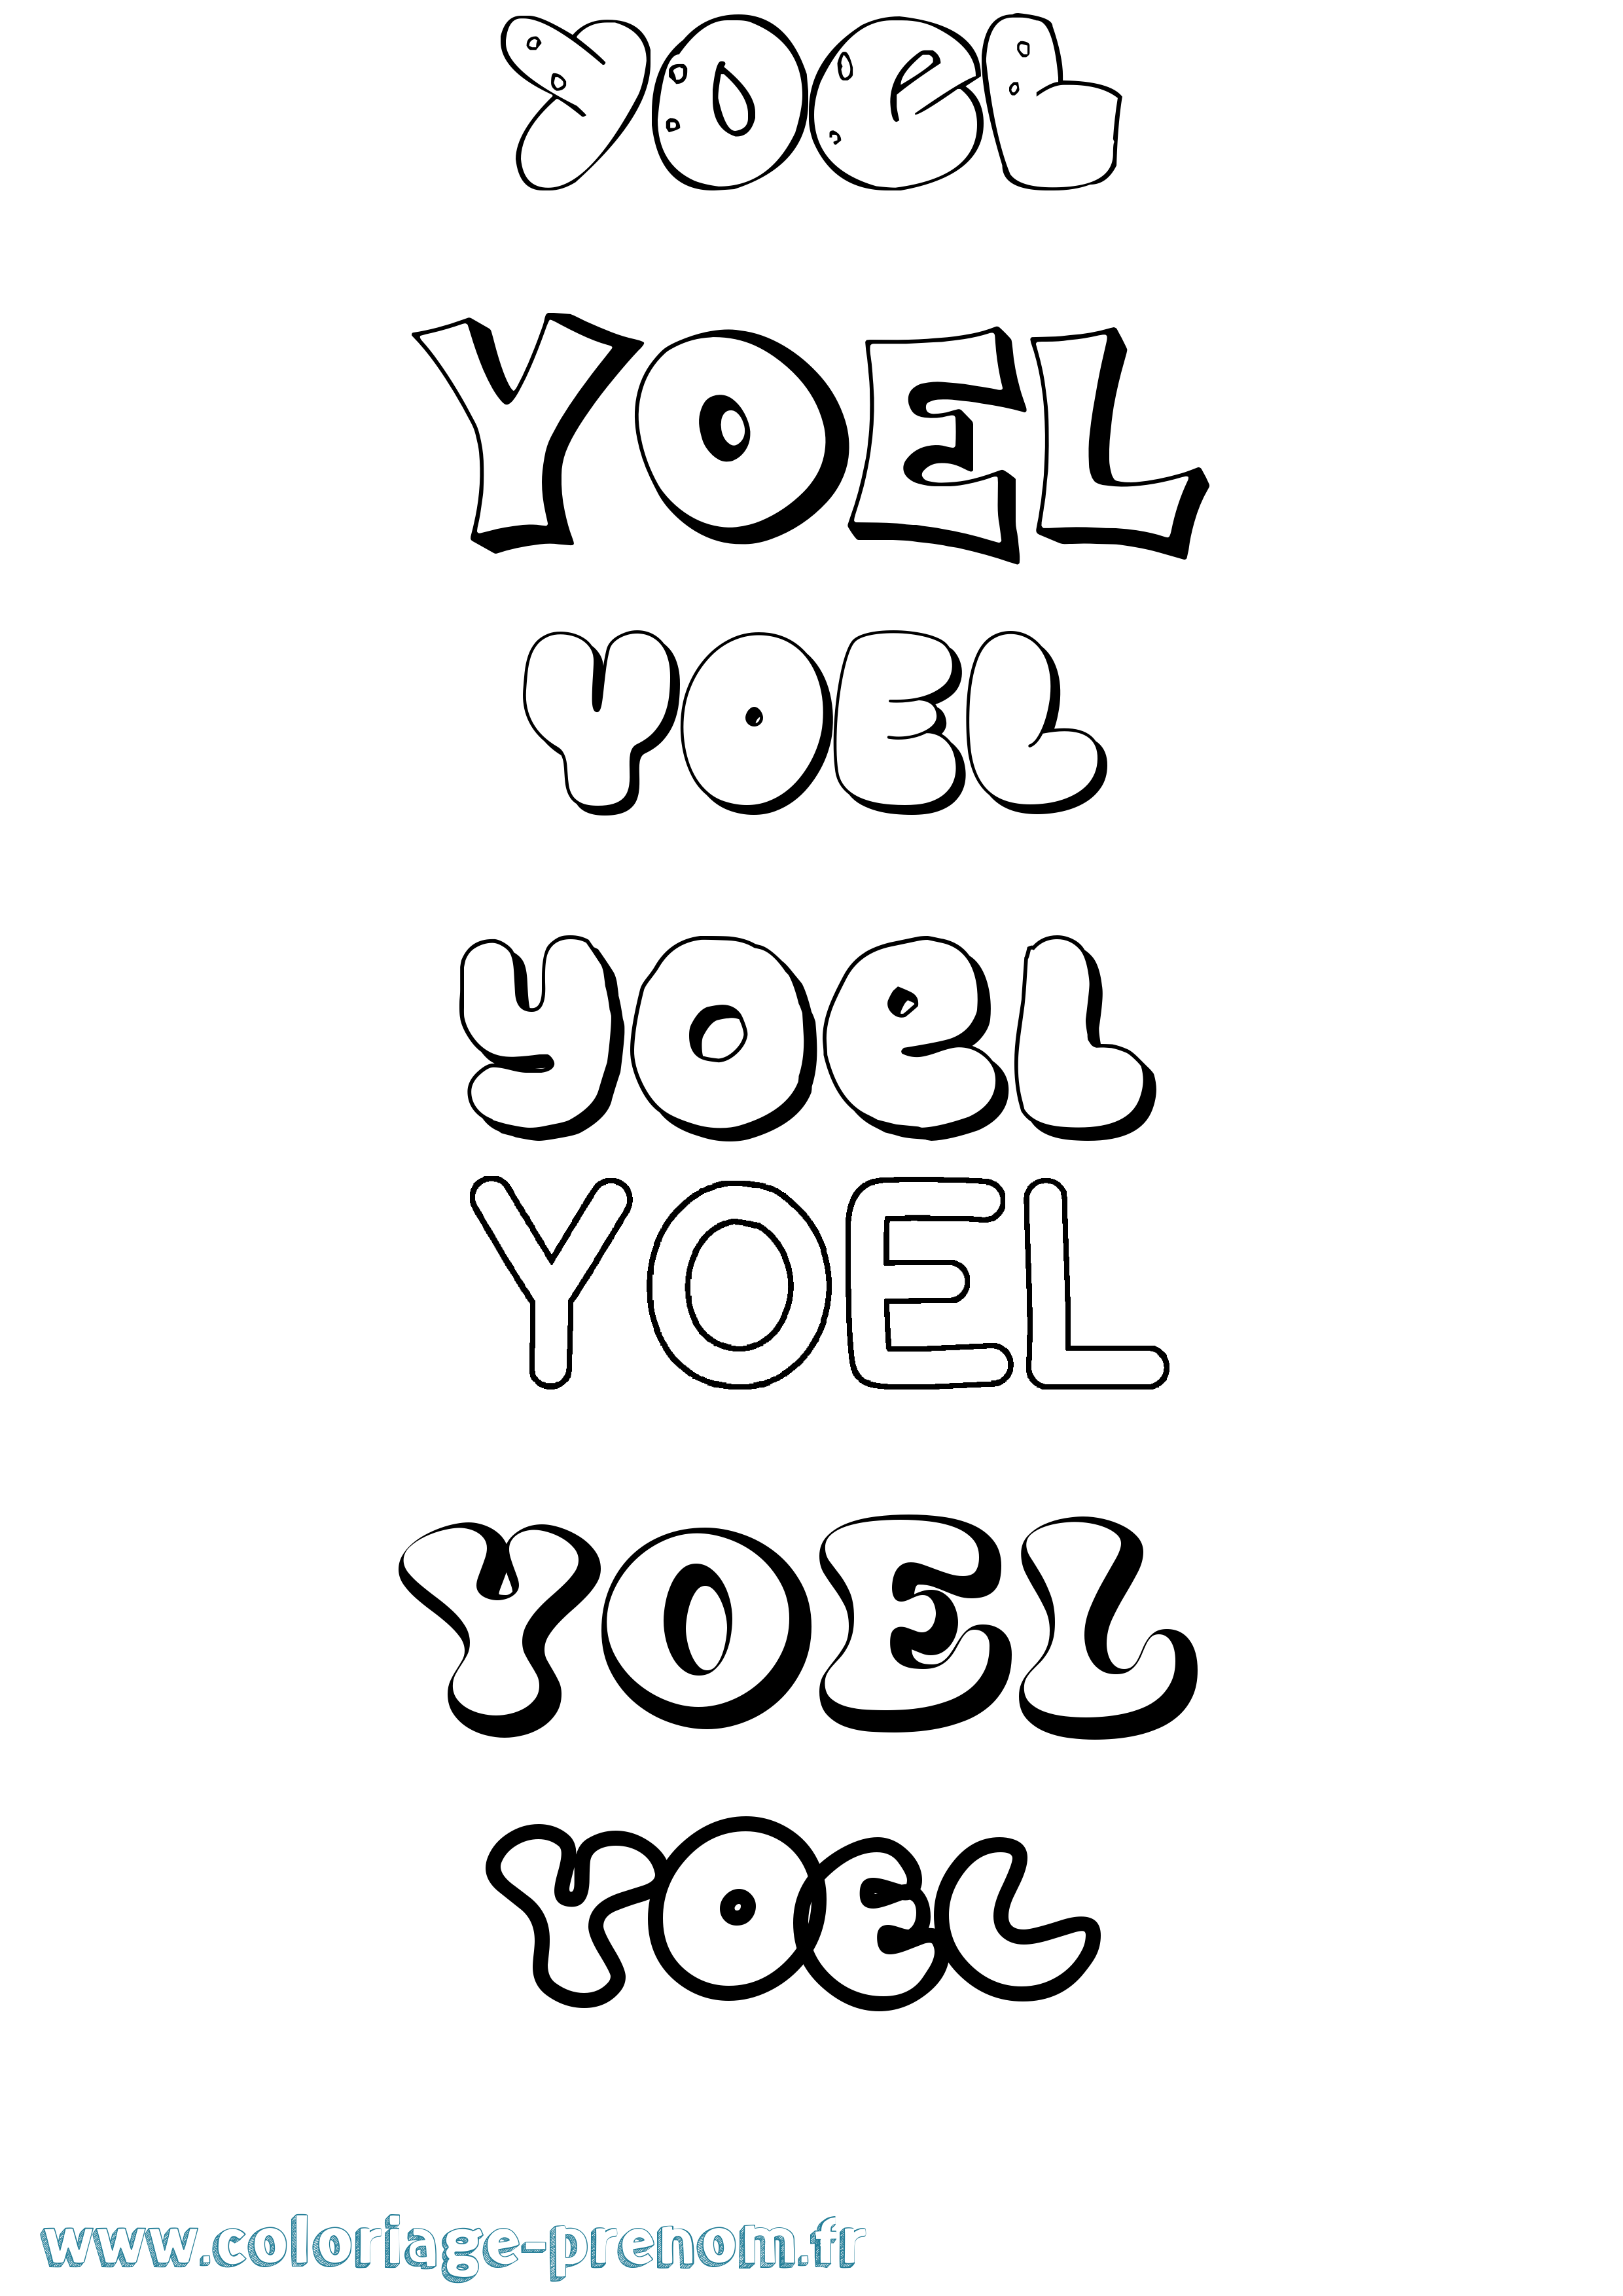 Coloriage prénom Yoel